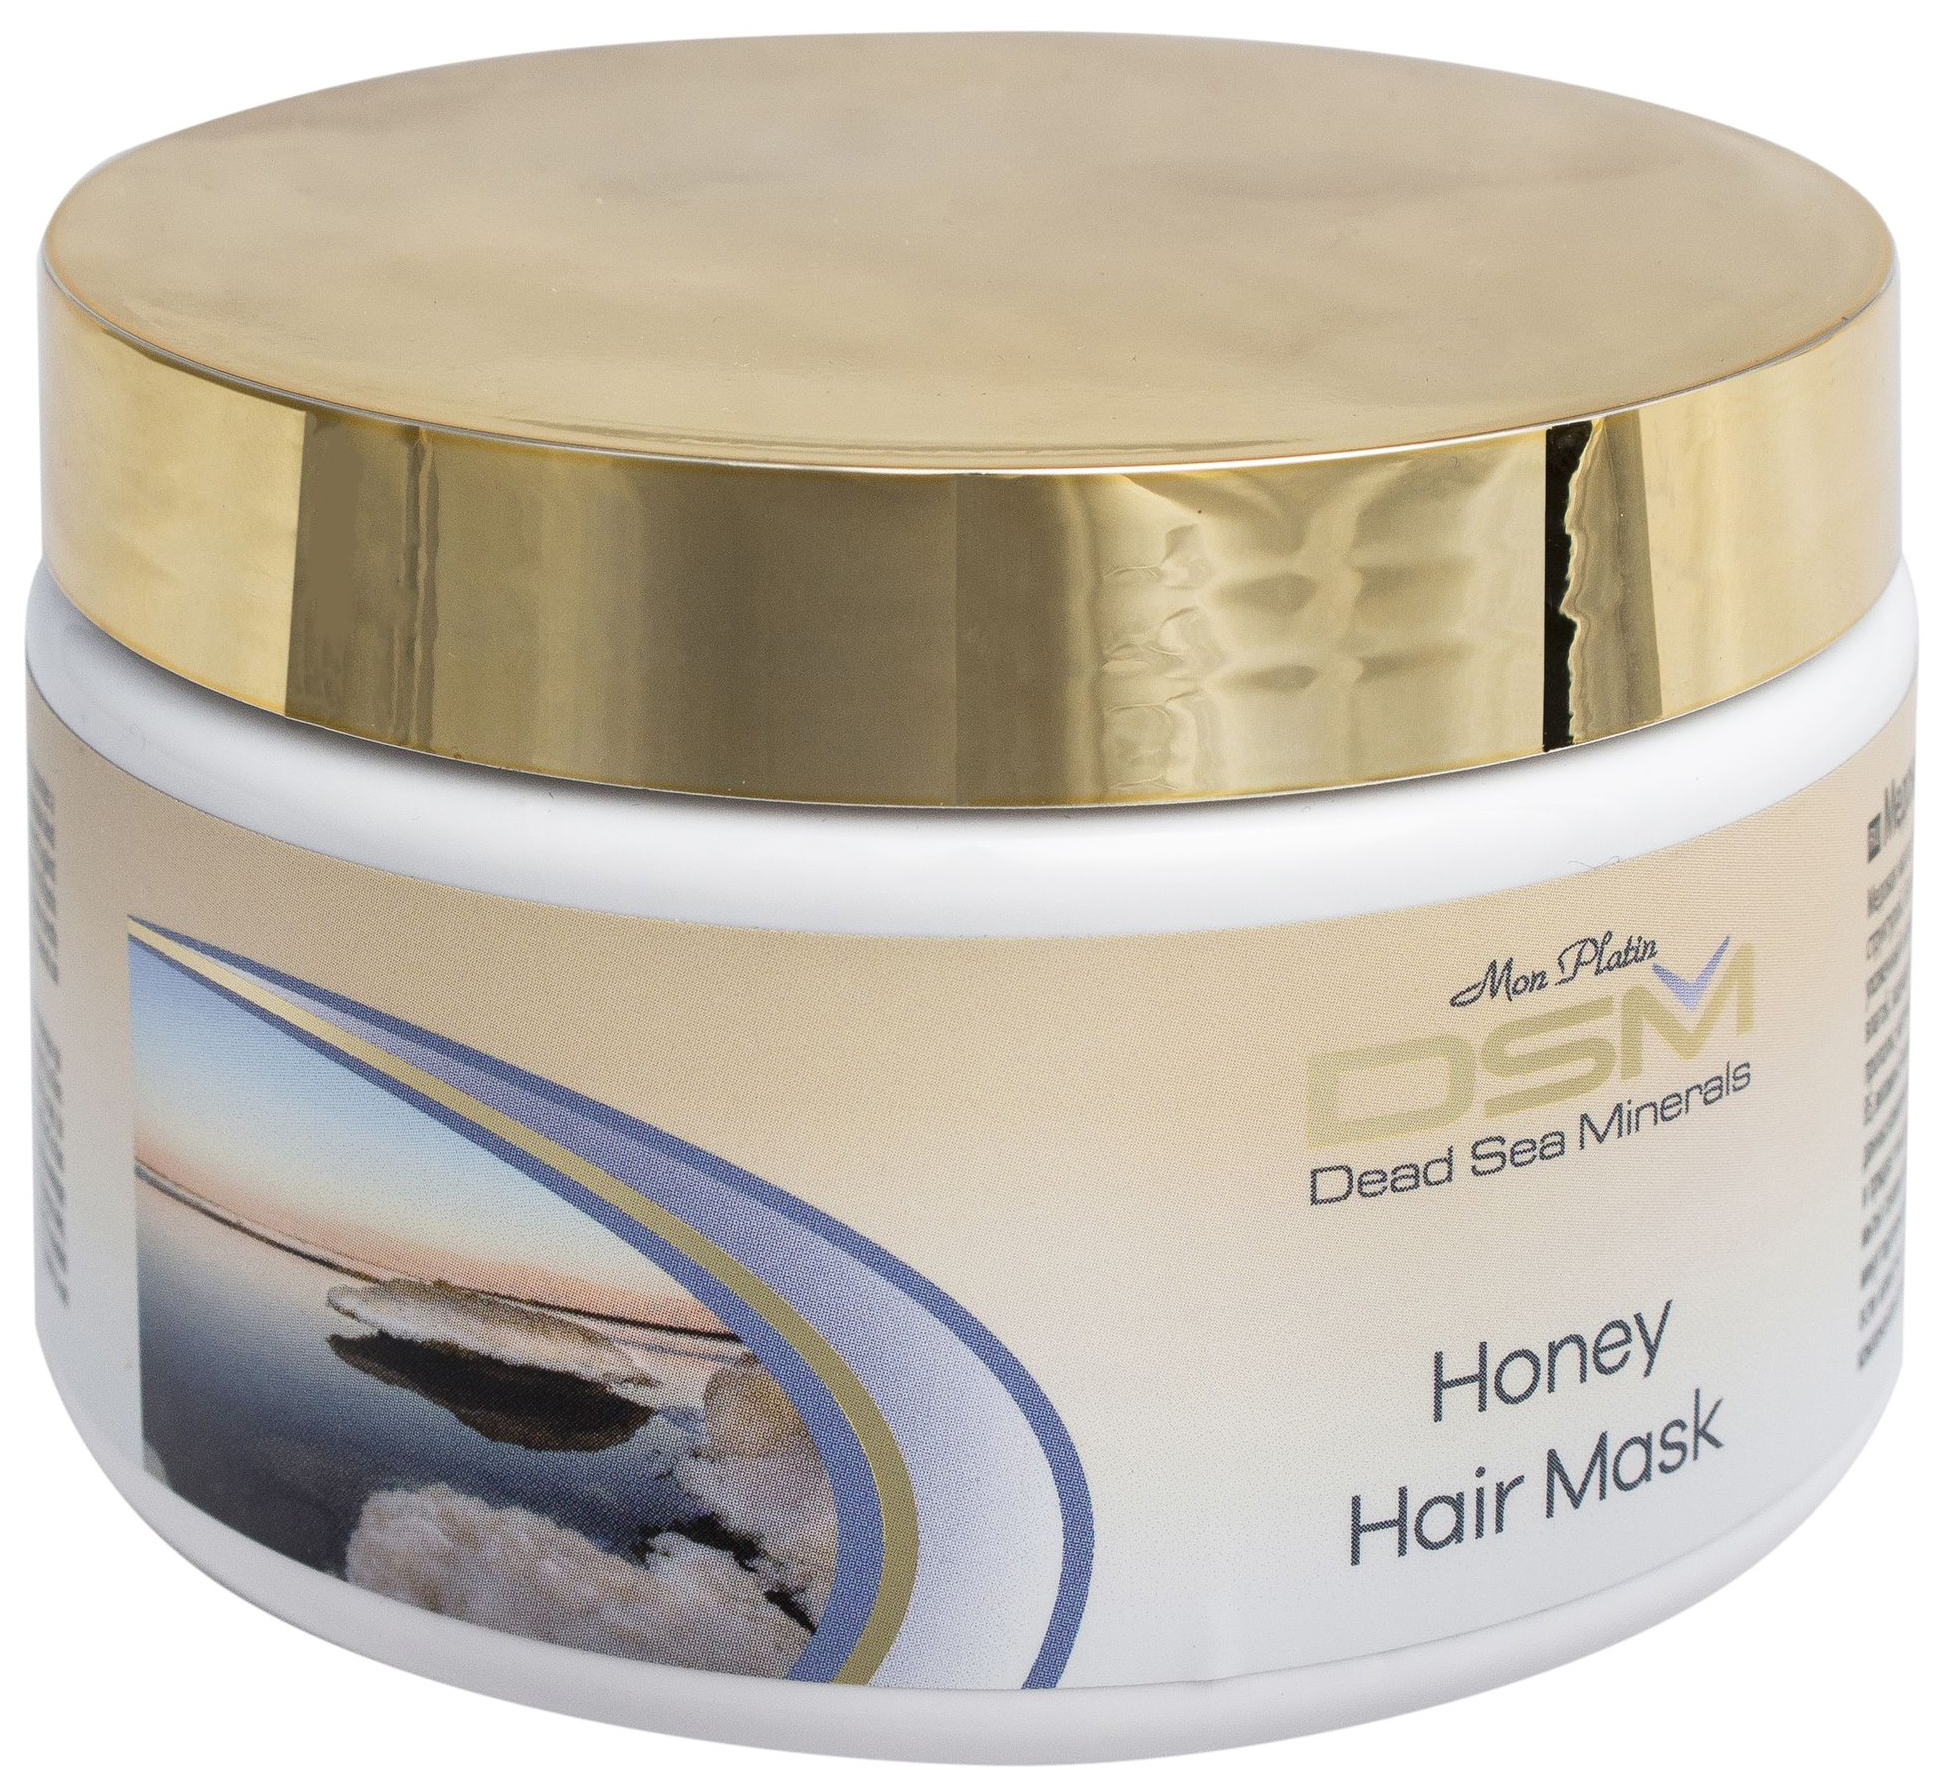 Маска для волос Mon Platin Honey Hair Mask 250 мл соль морская dr aqua природная для ванн райское наслаждение 0 7кг пэт банка 4710207